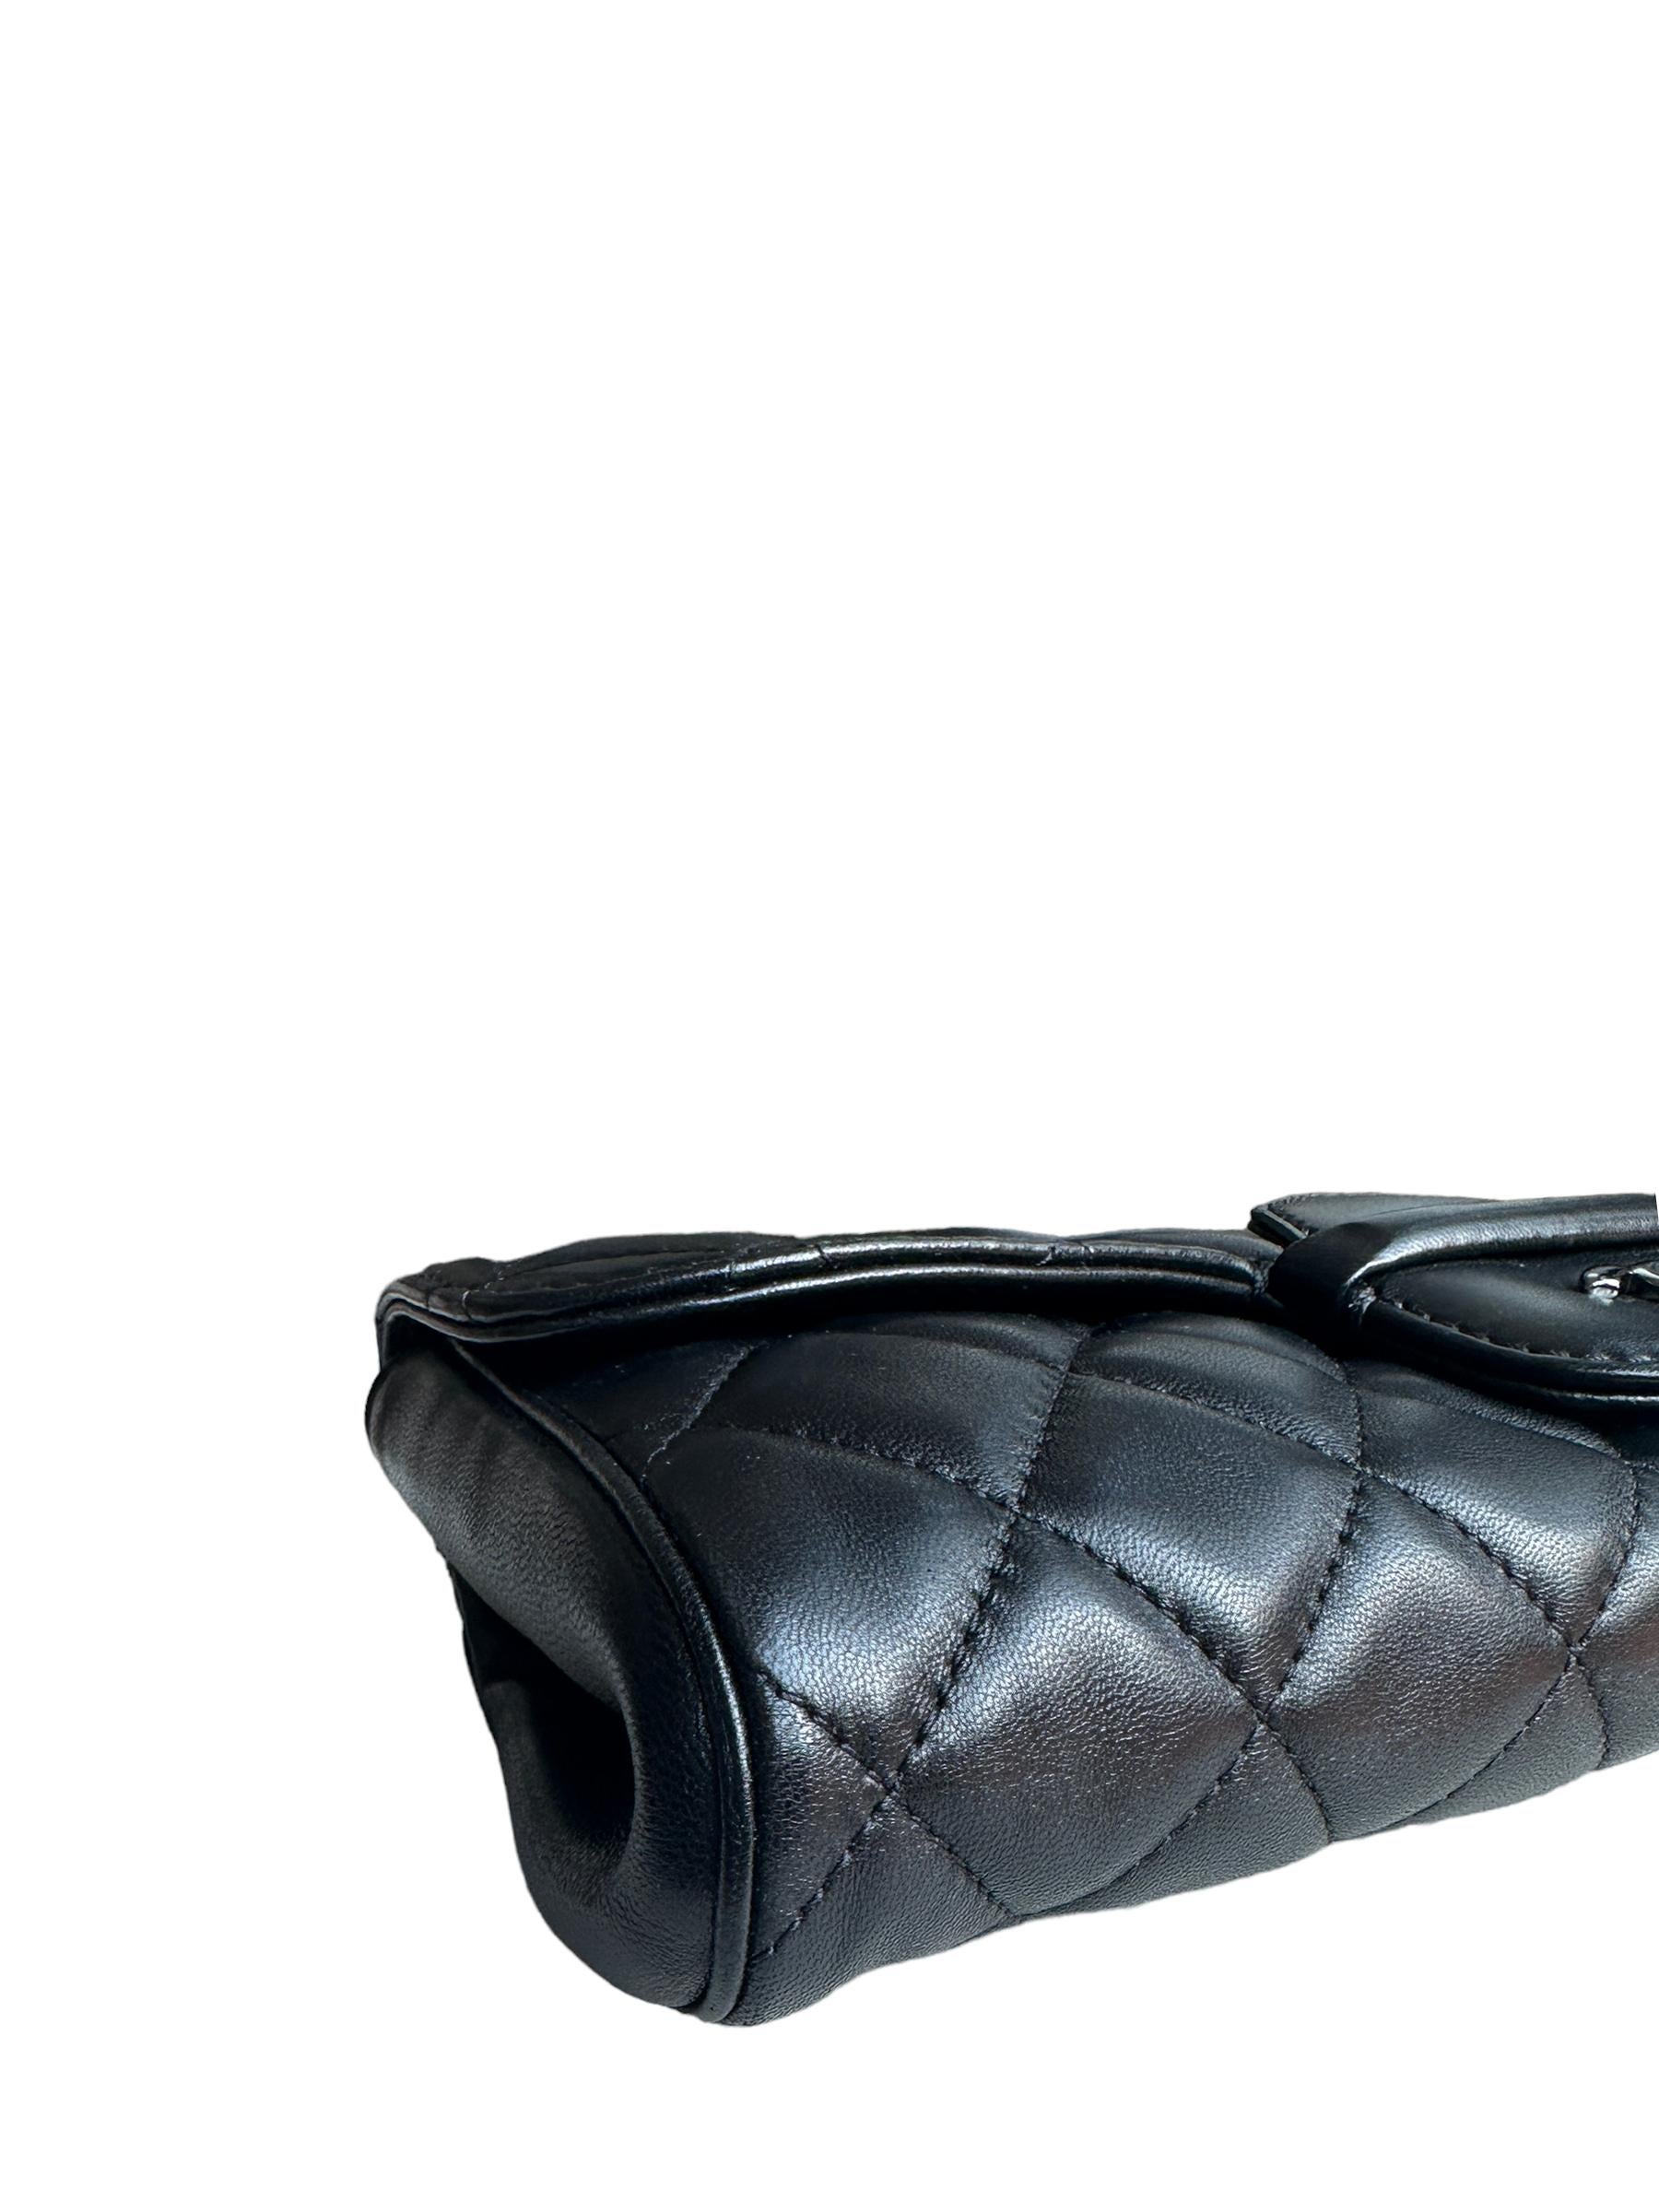 Women's Chanel Black Lambskin Leather CC Twistlock Clutch Bag For Sale